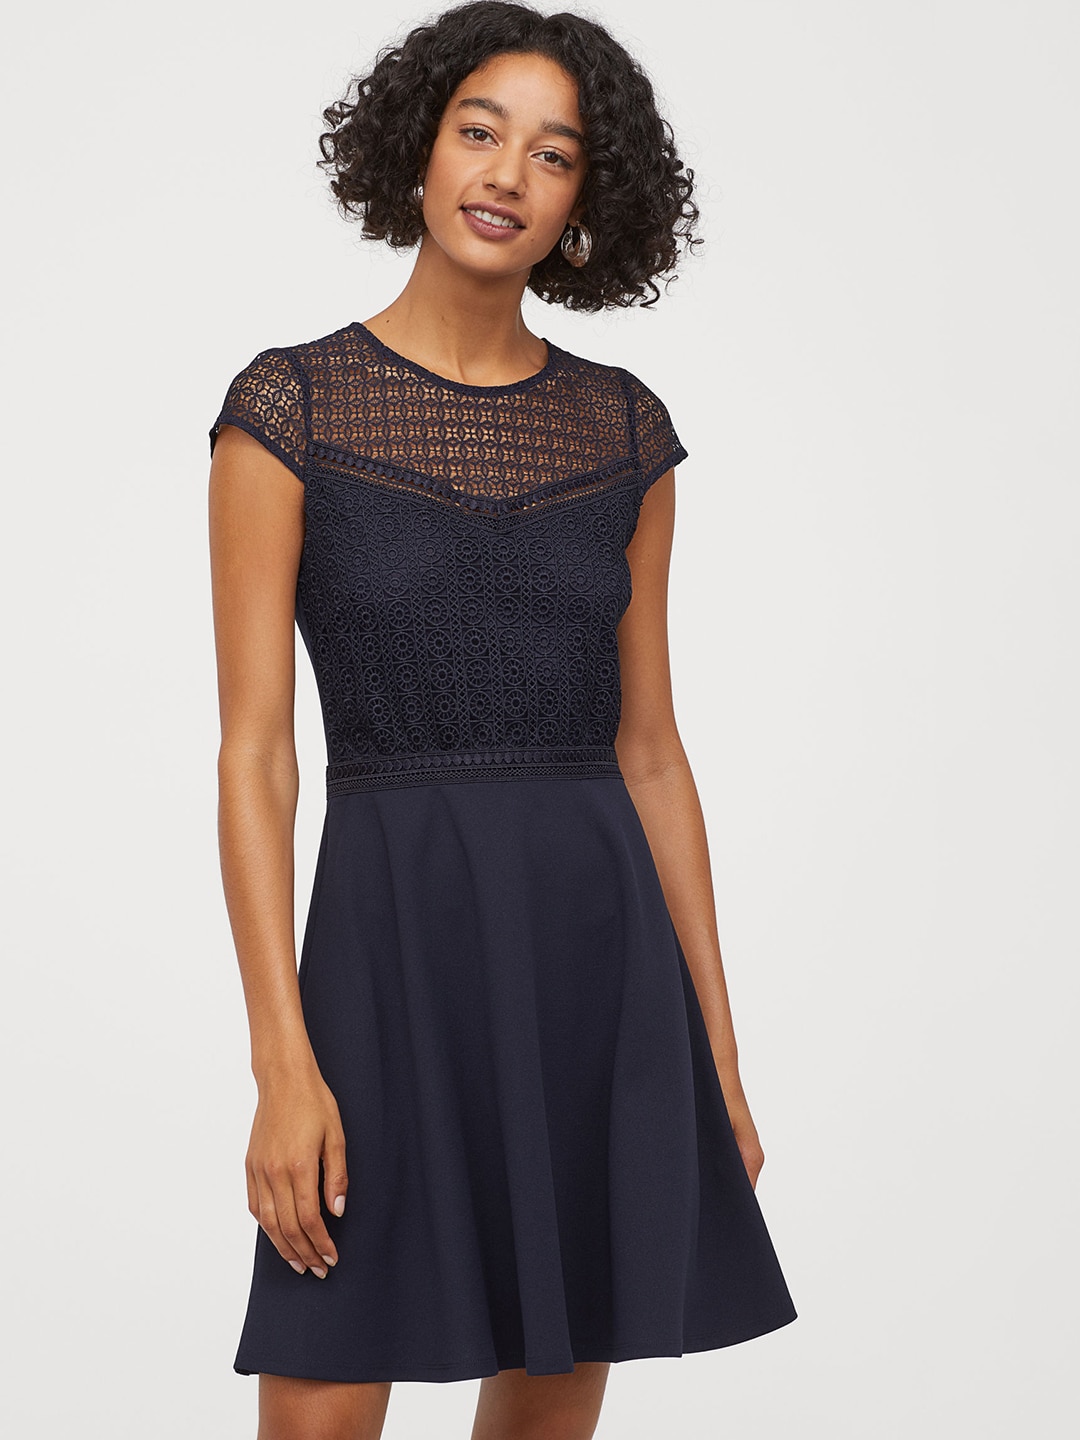 h&m navy blue lace dress